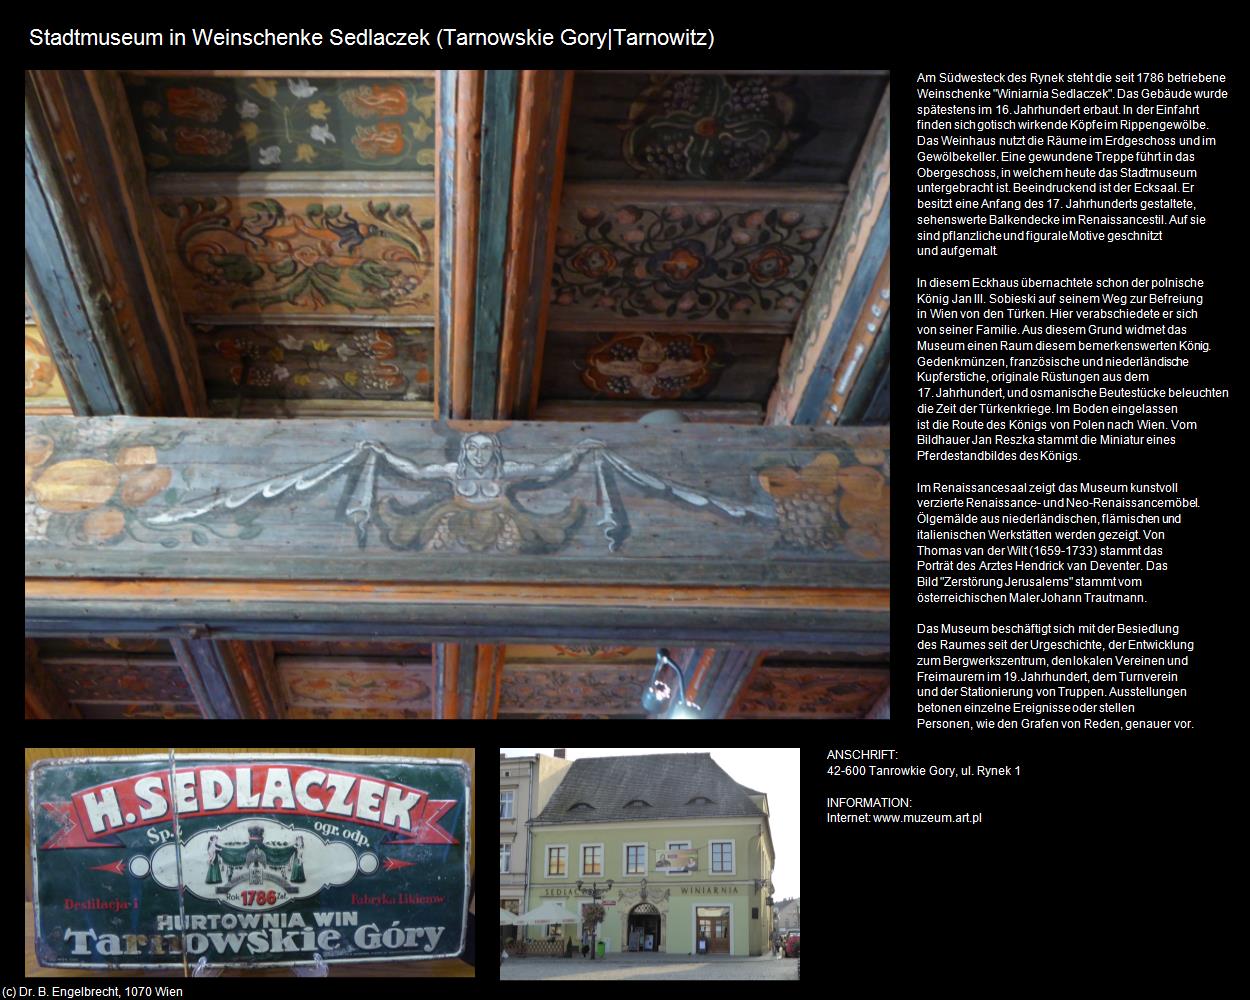 Stadtmuseum in Weinschenke Sedlaczek (Tarnowskie Gory|Tarnowitz) in POLEN-Schlesien